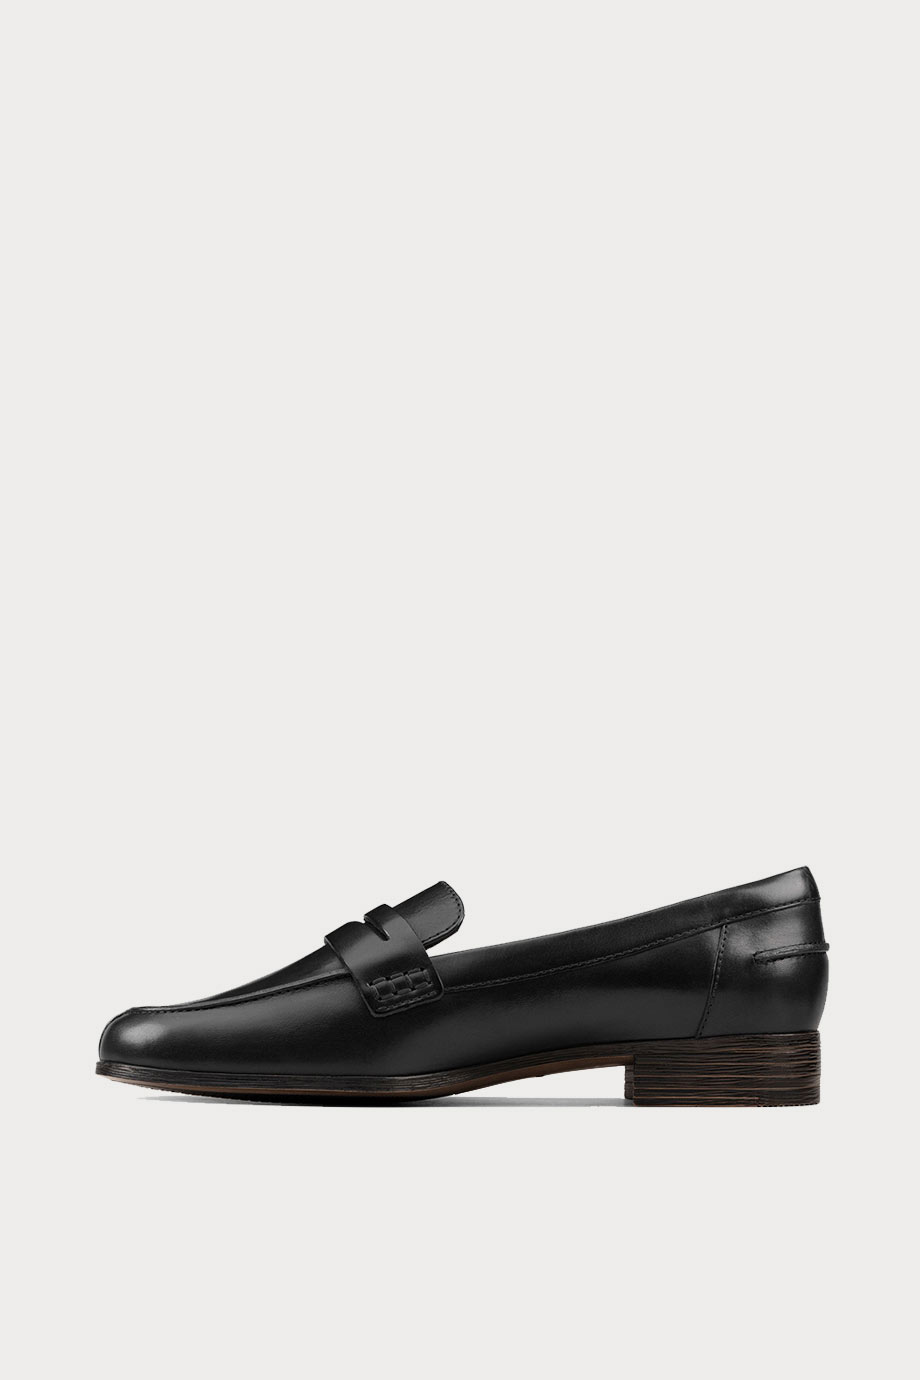 spiridoula metheniti shoes xalkida p hamble loafer black leather clarks 5